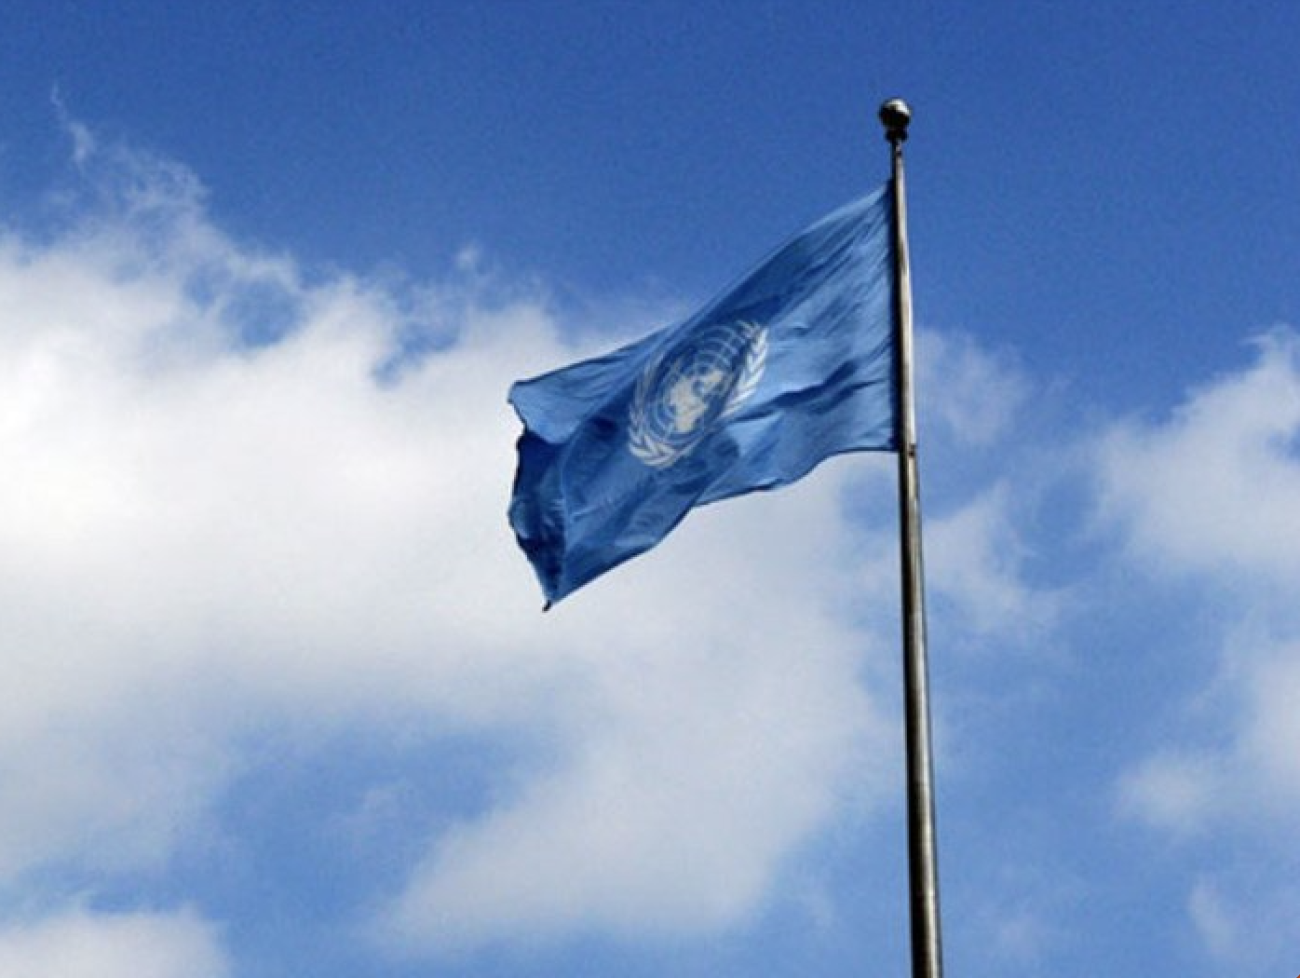 BM Bayrağı New York’taki BM Genel Merkezinin önünde dalgalanıyor.